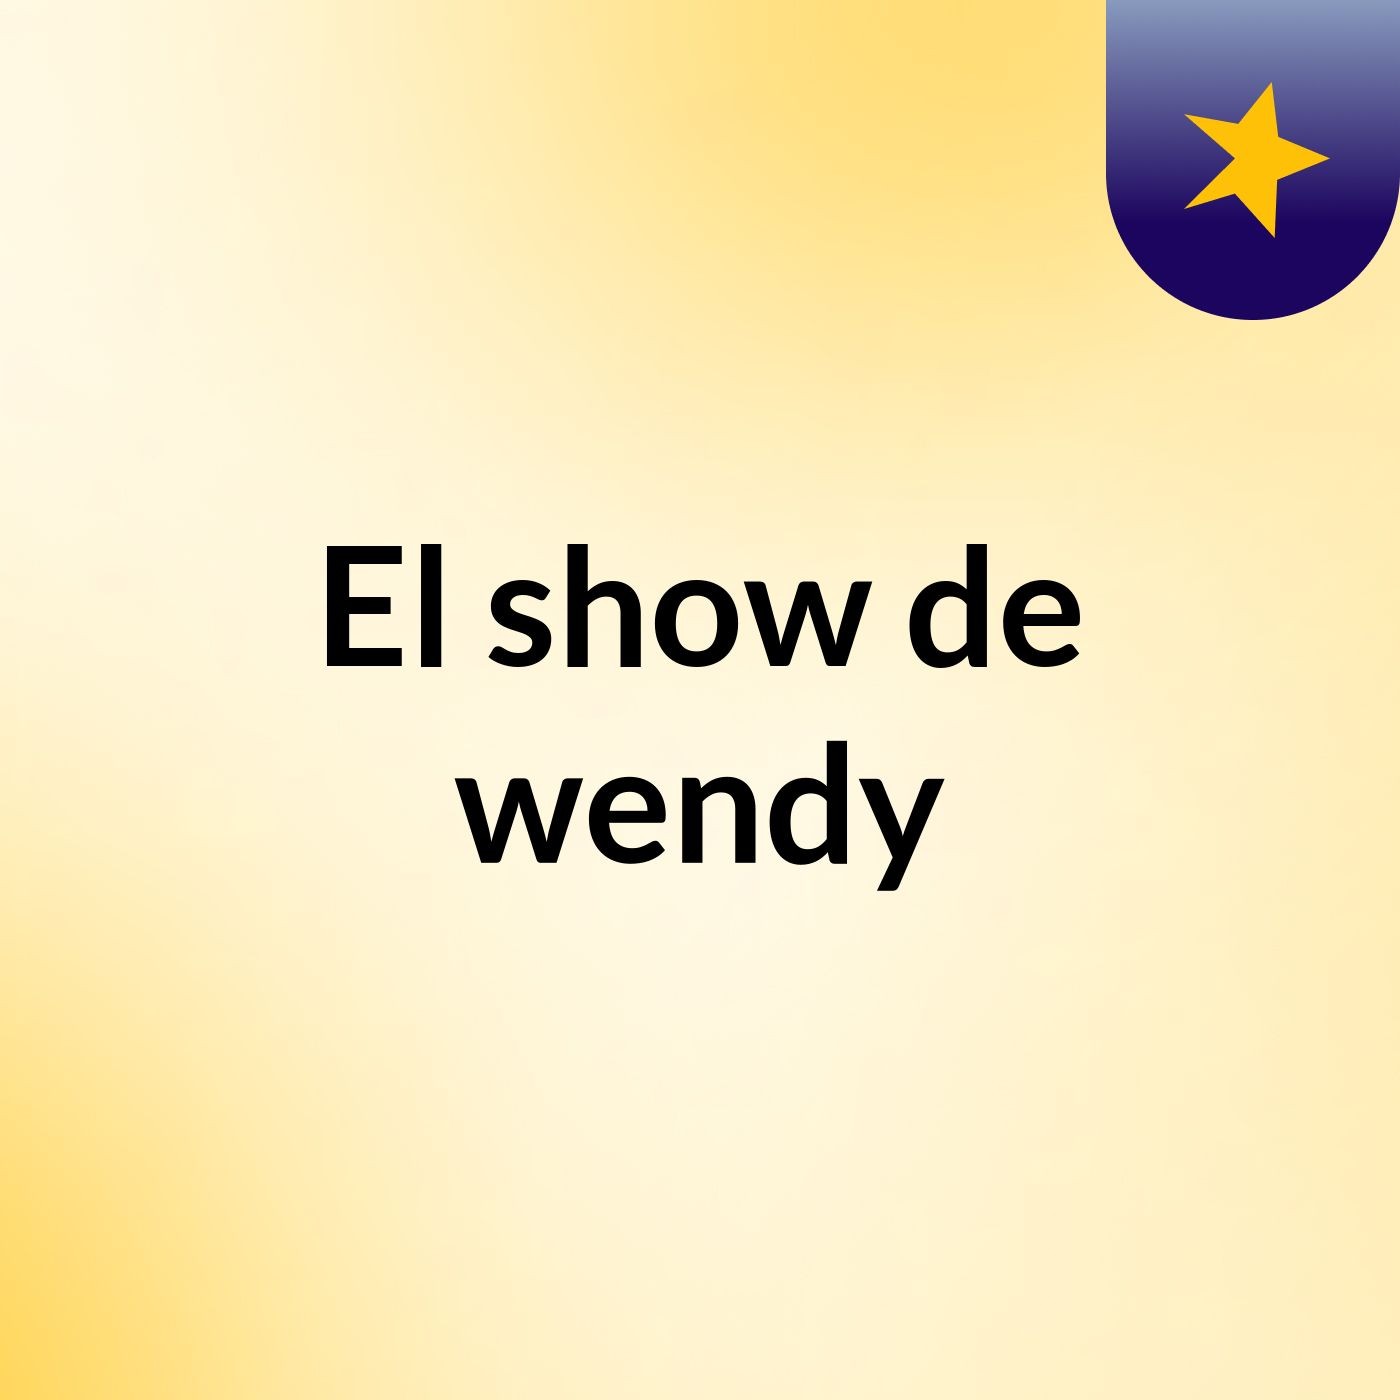 El show de wendy